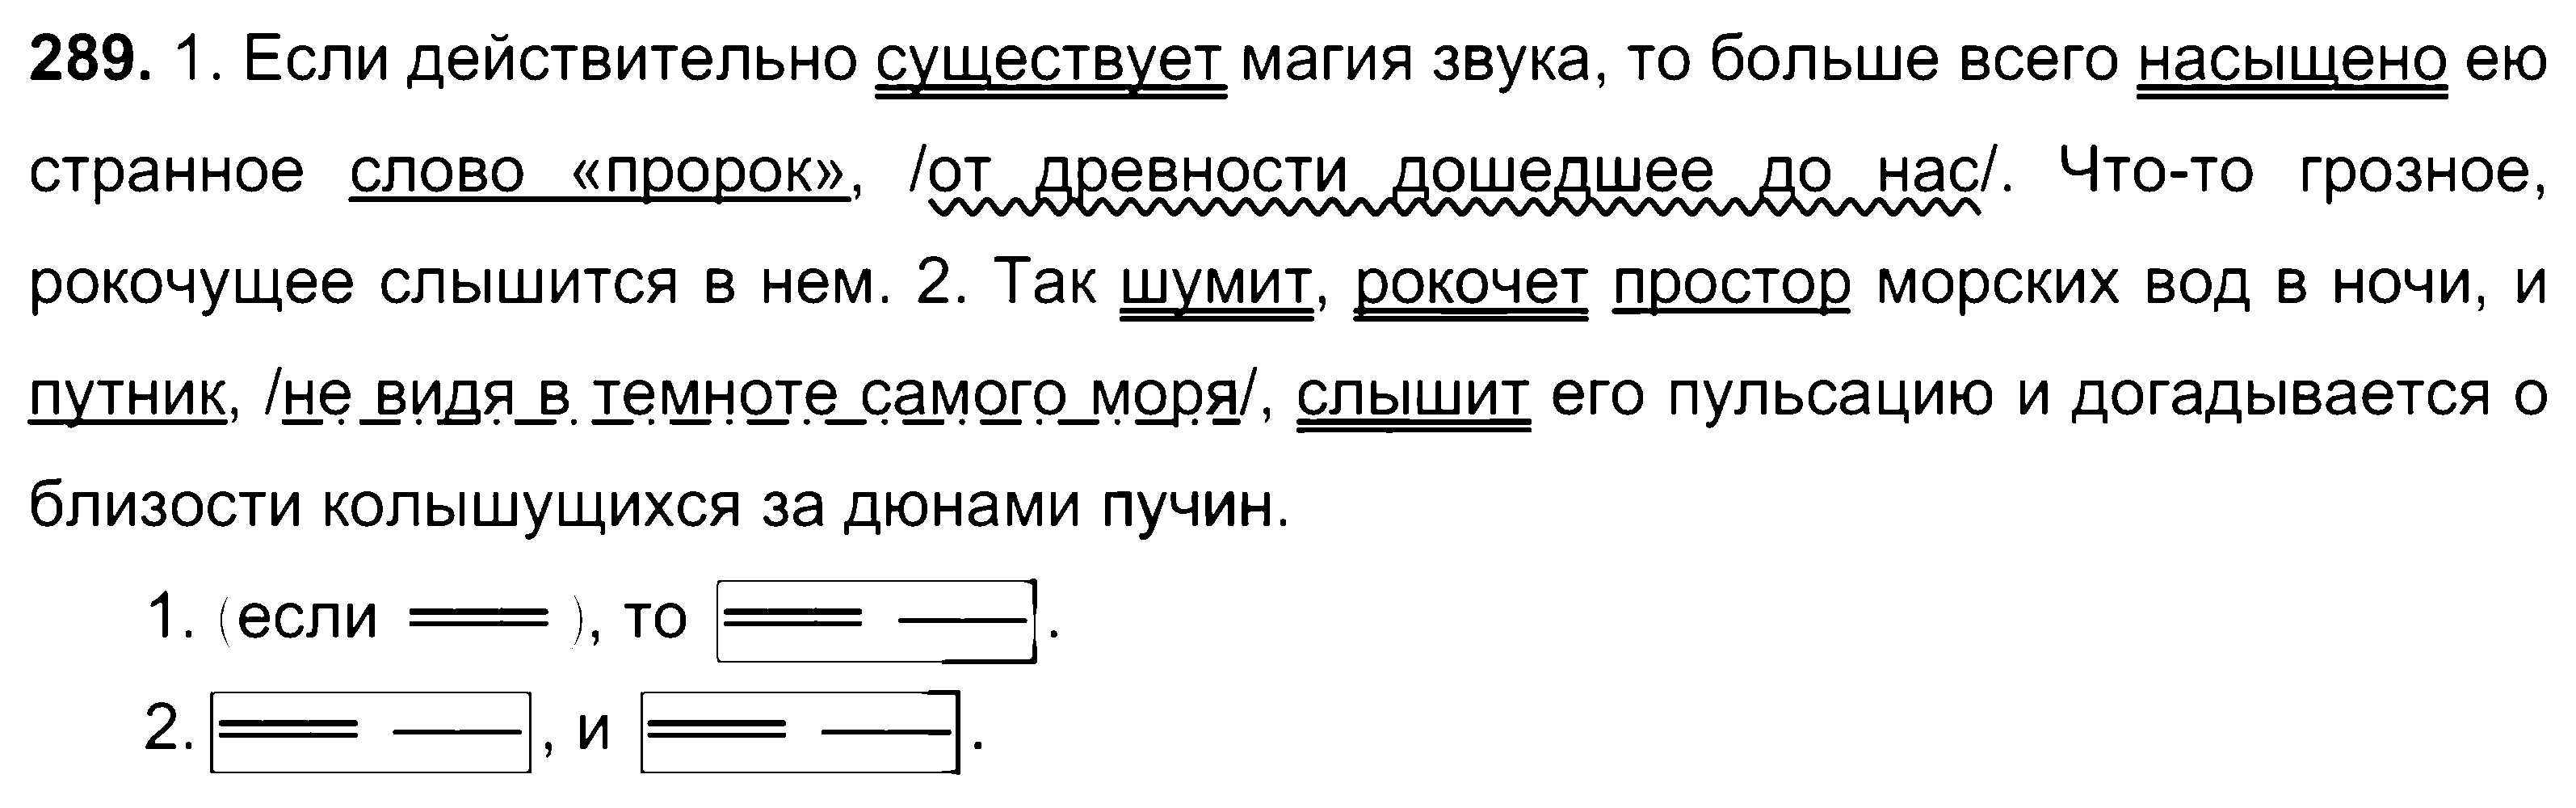 ГДЗ Русский язык 8 класс - 289